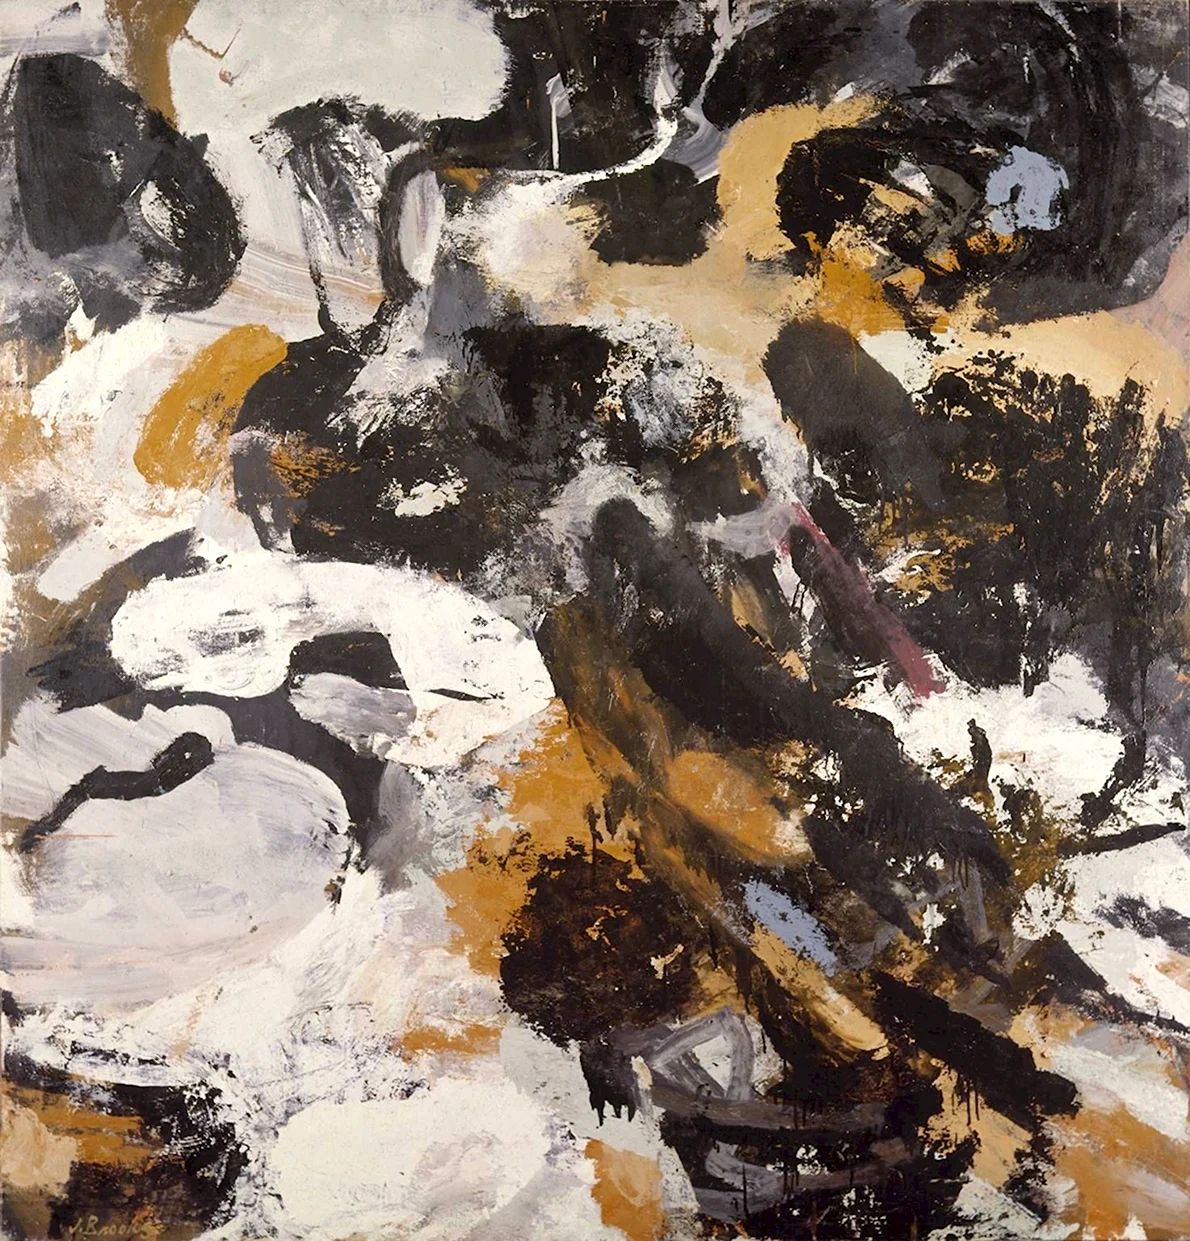 Джеймс Брукс абстрактный экспрессионизм в живописи